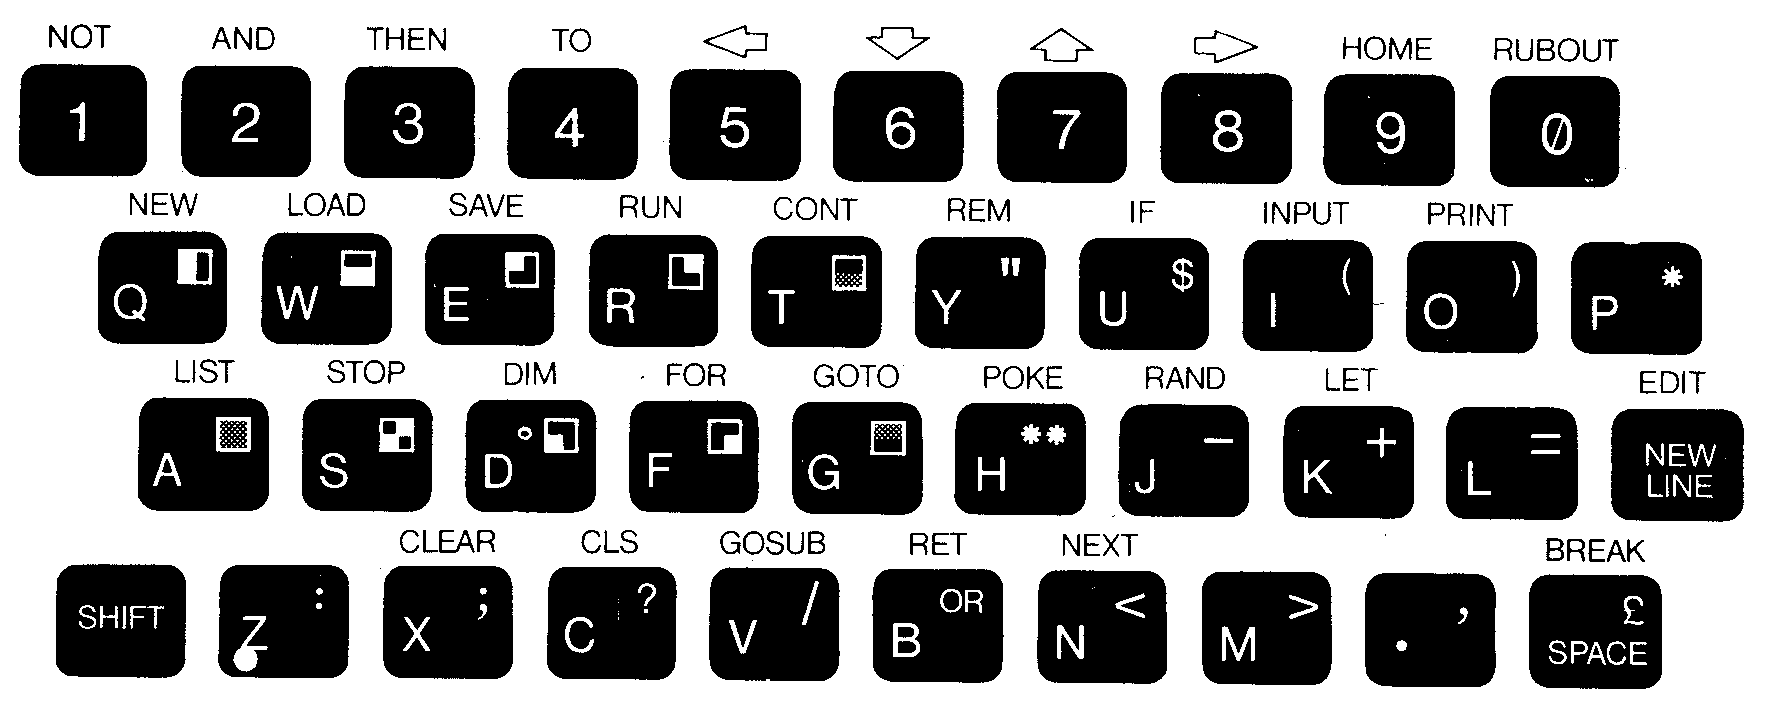 ZX80 keyboard layout